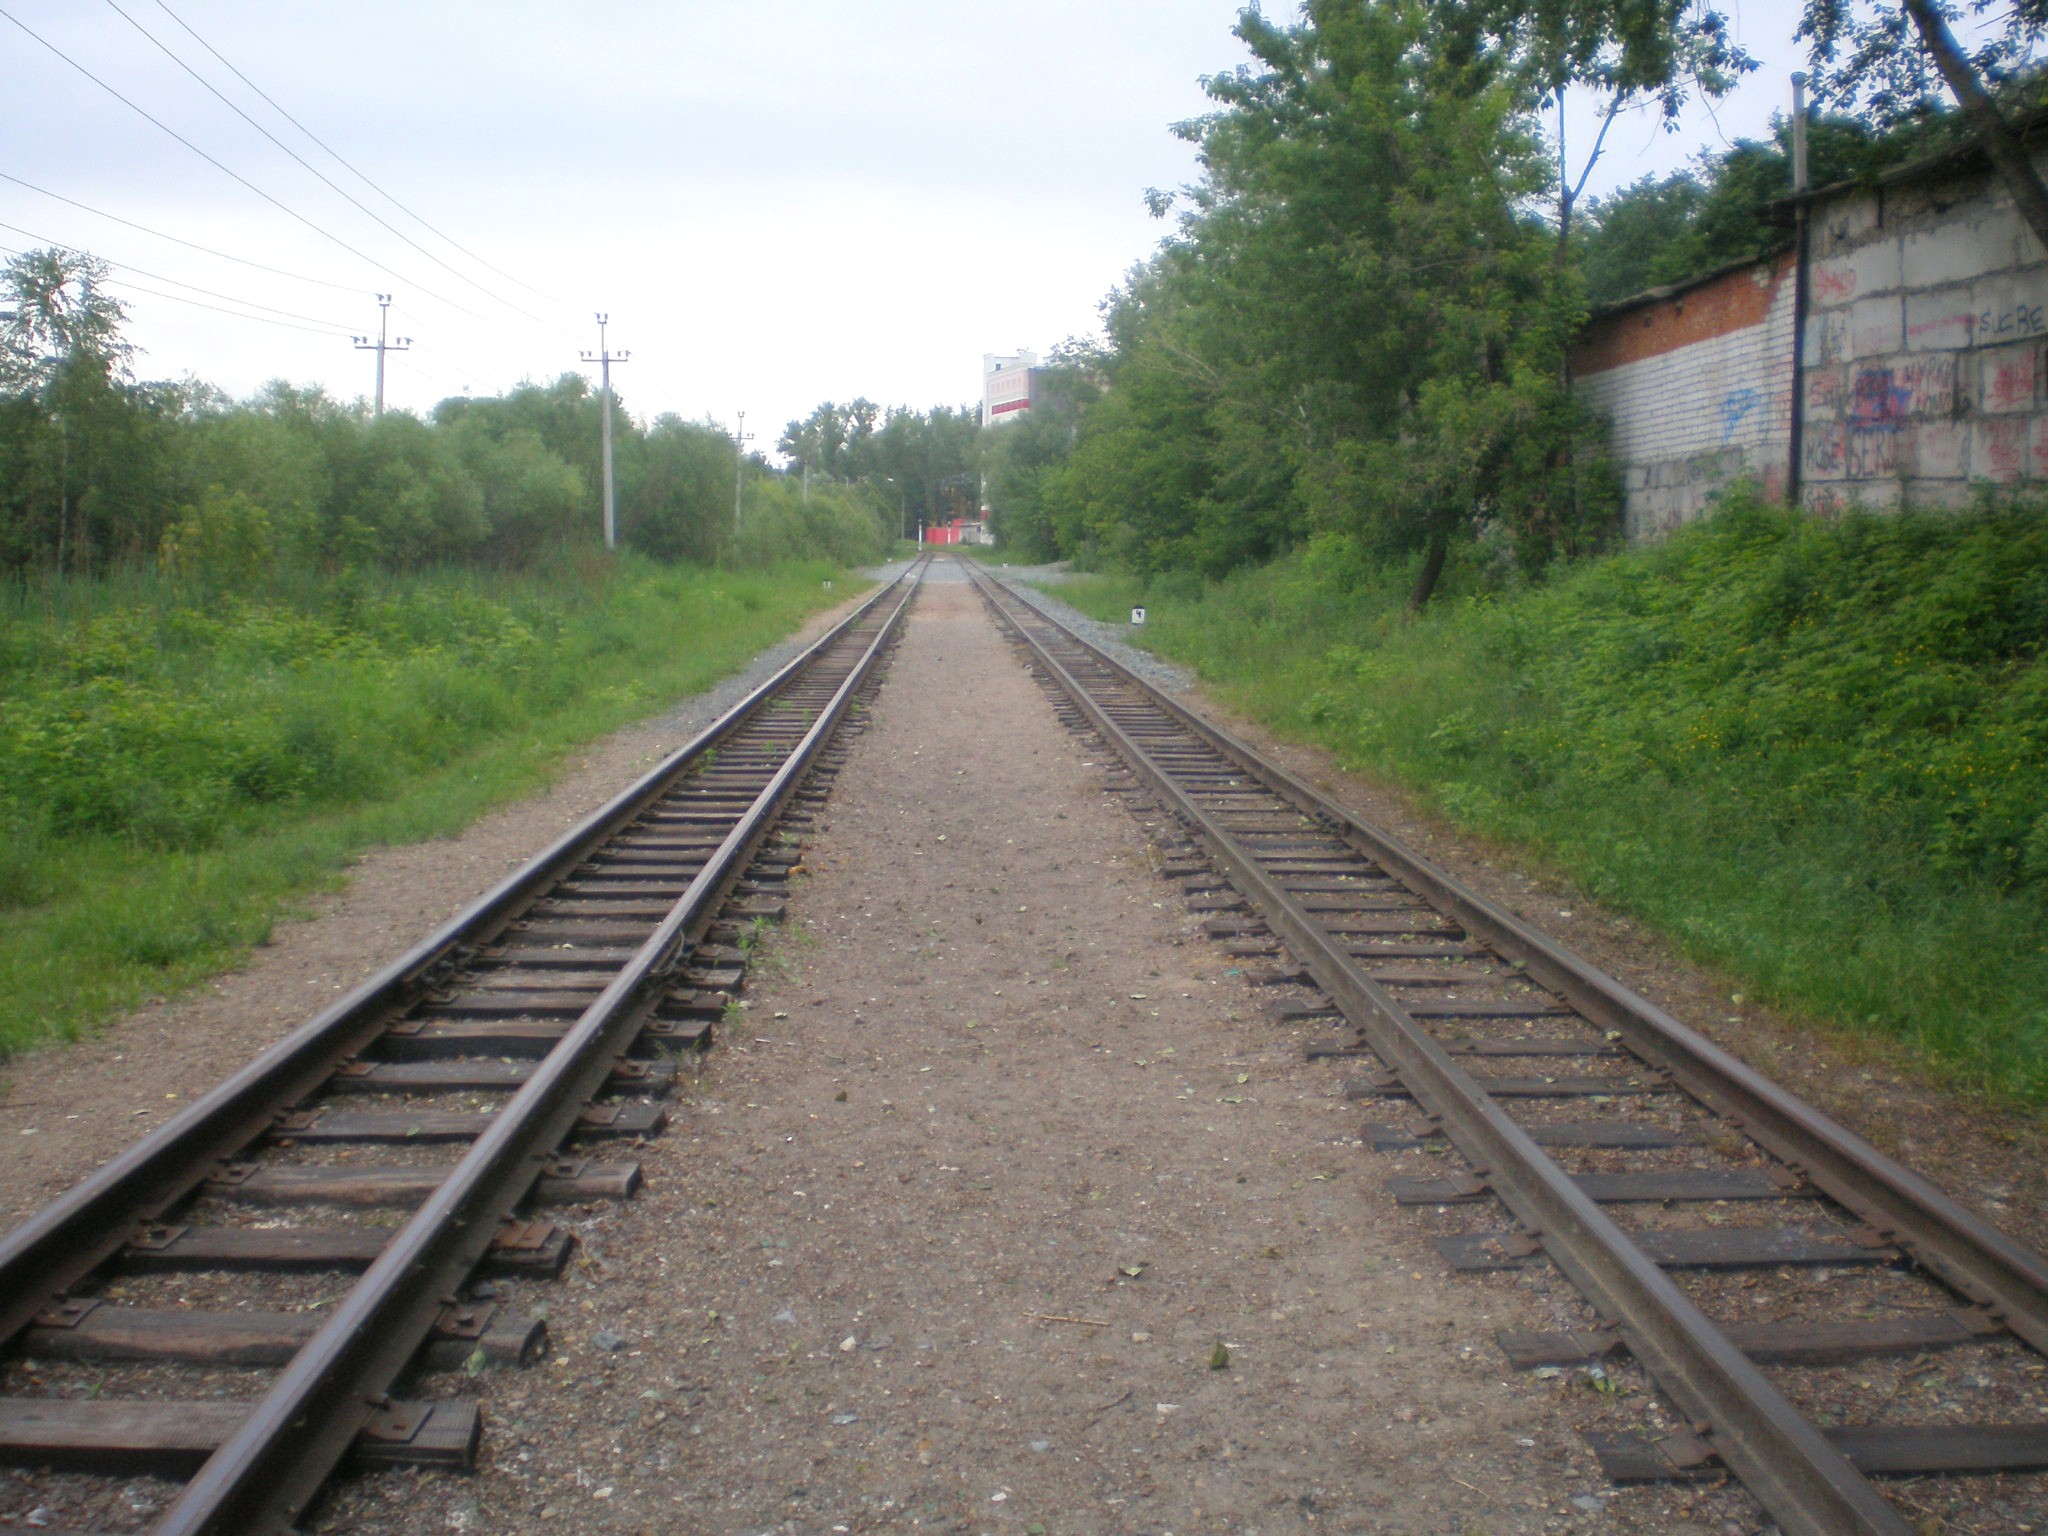 Малая Горьковская (Нижегородская) детская железная дорога — фотографии, сделанные в 2008 году (часть 1)